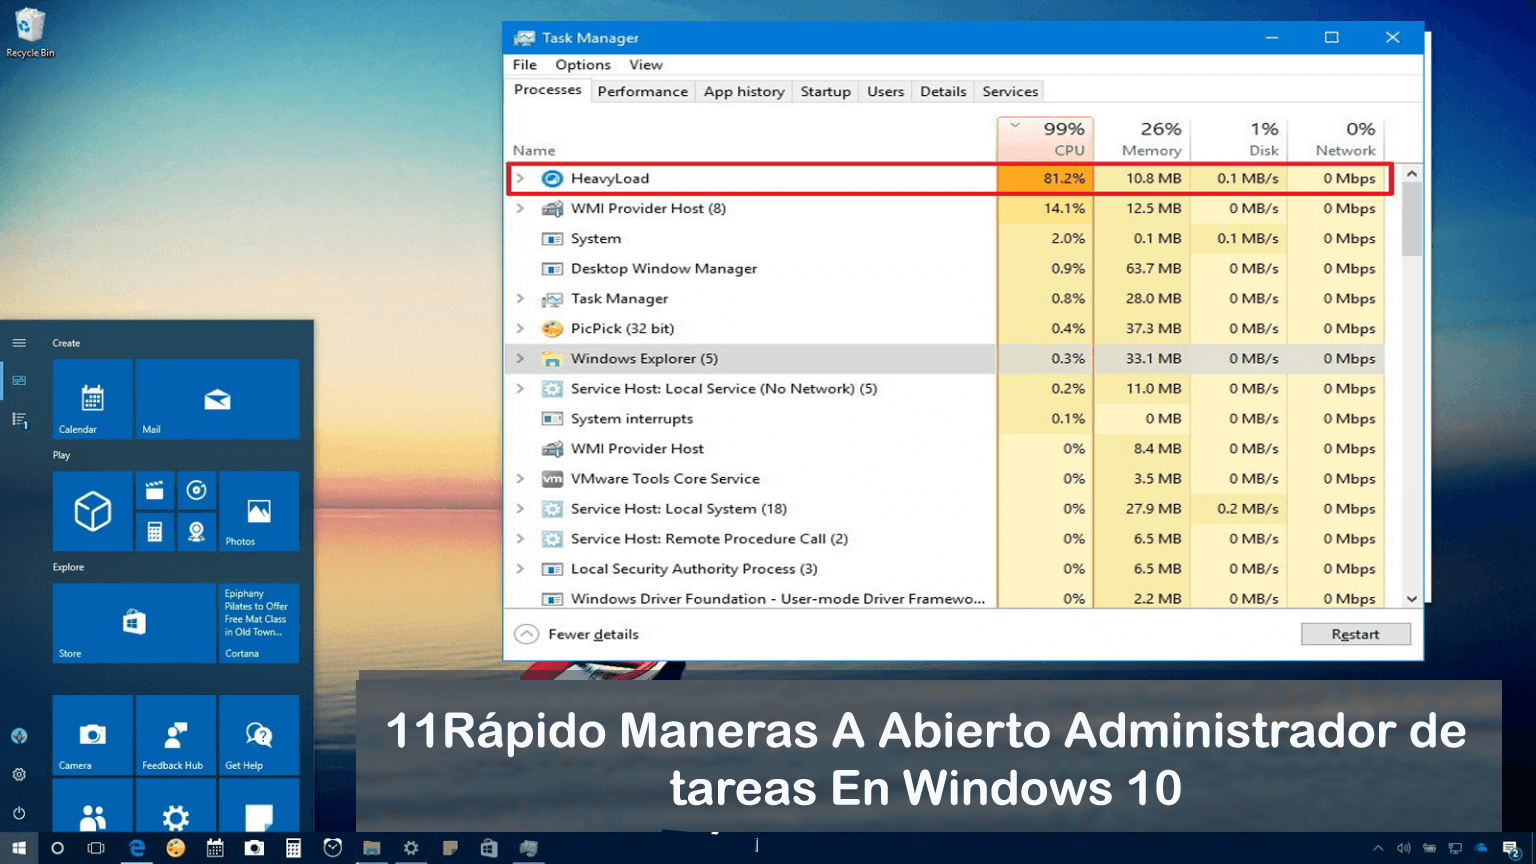 Windows Administrador de tareas